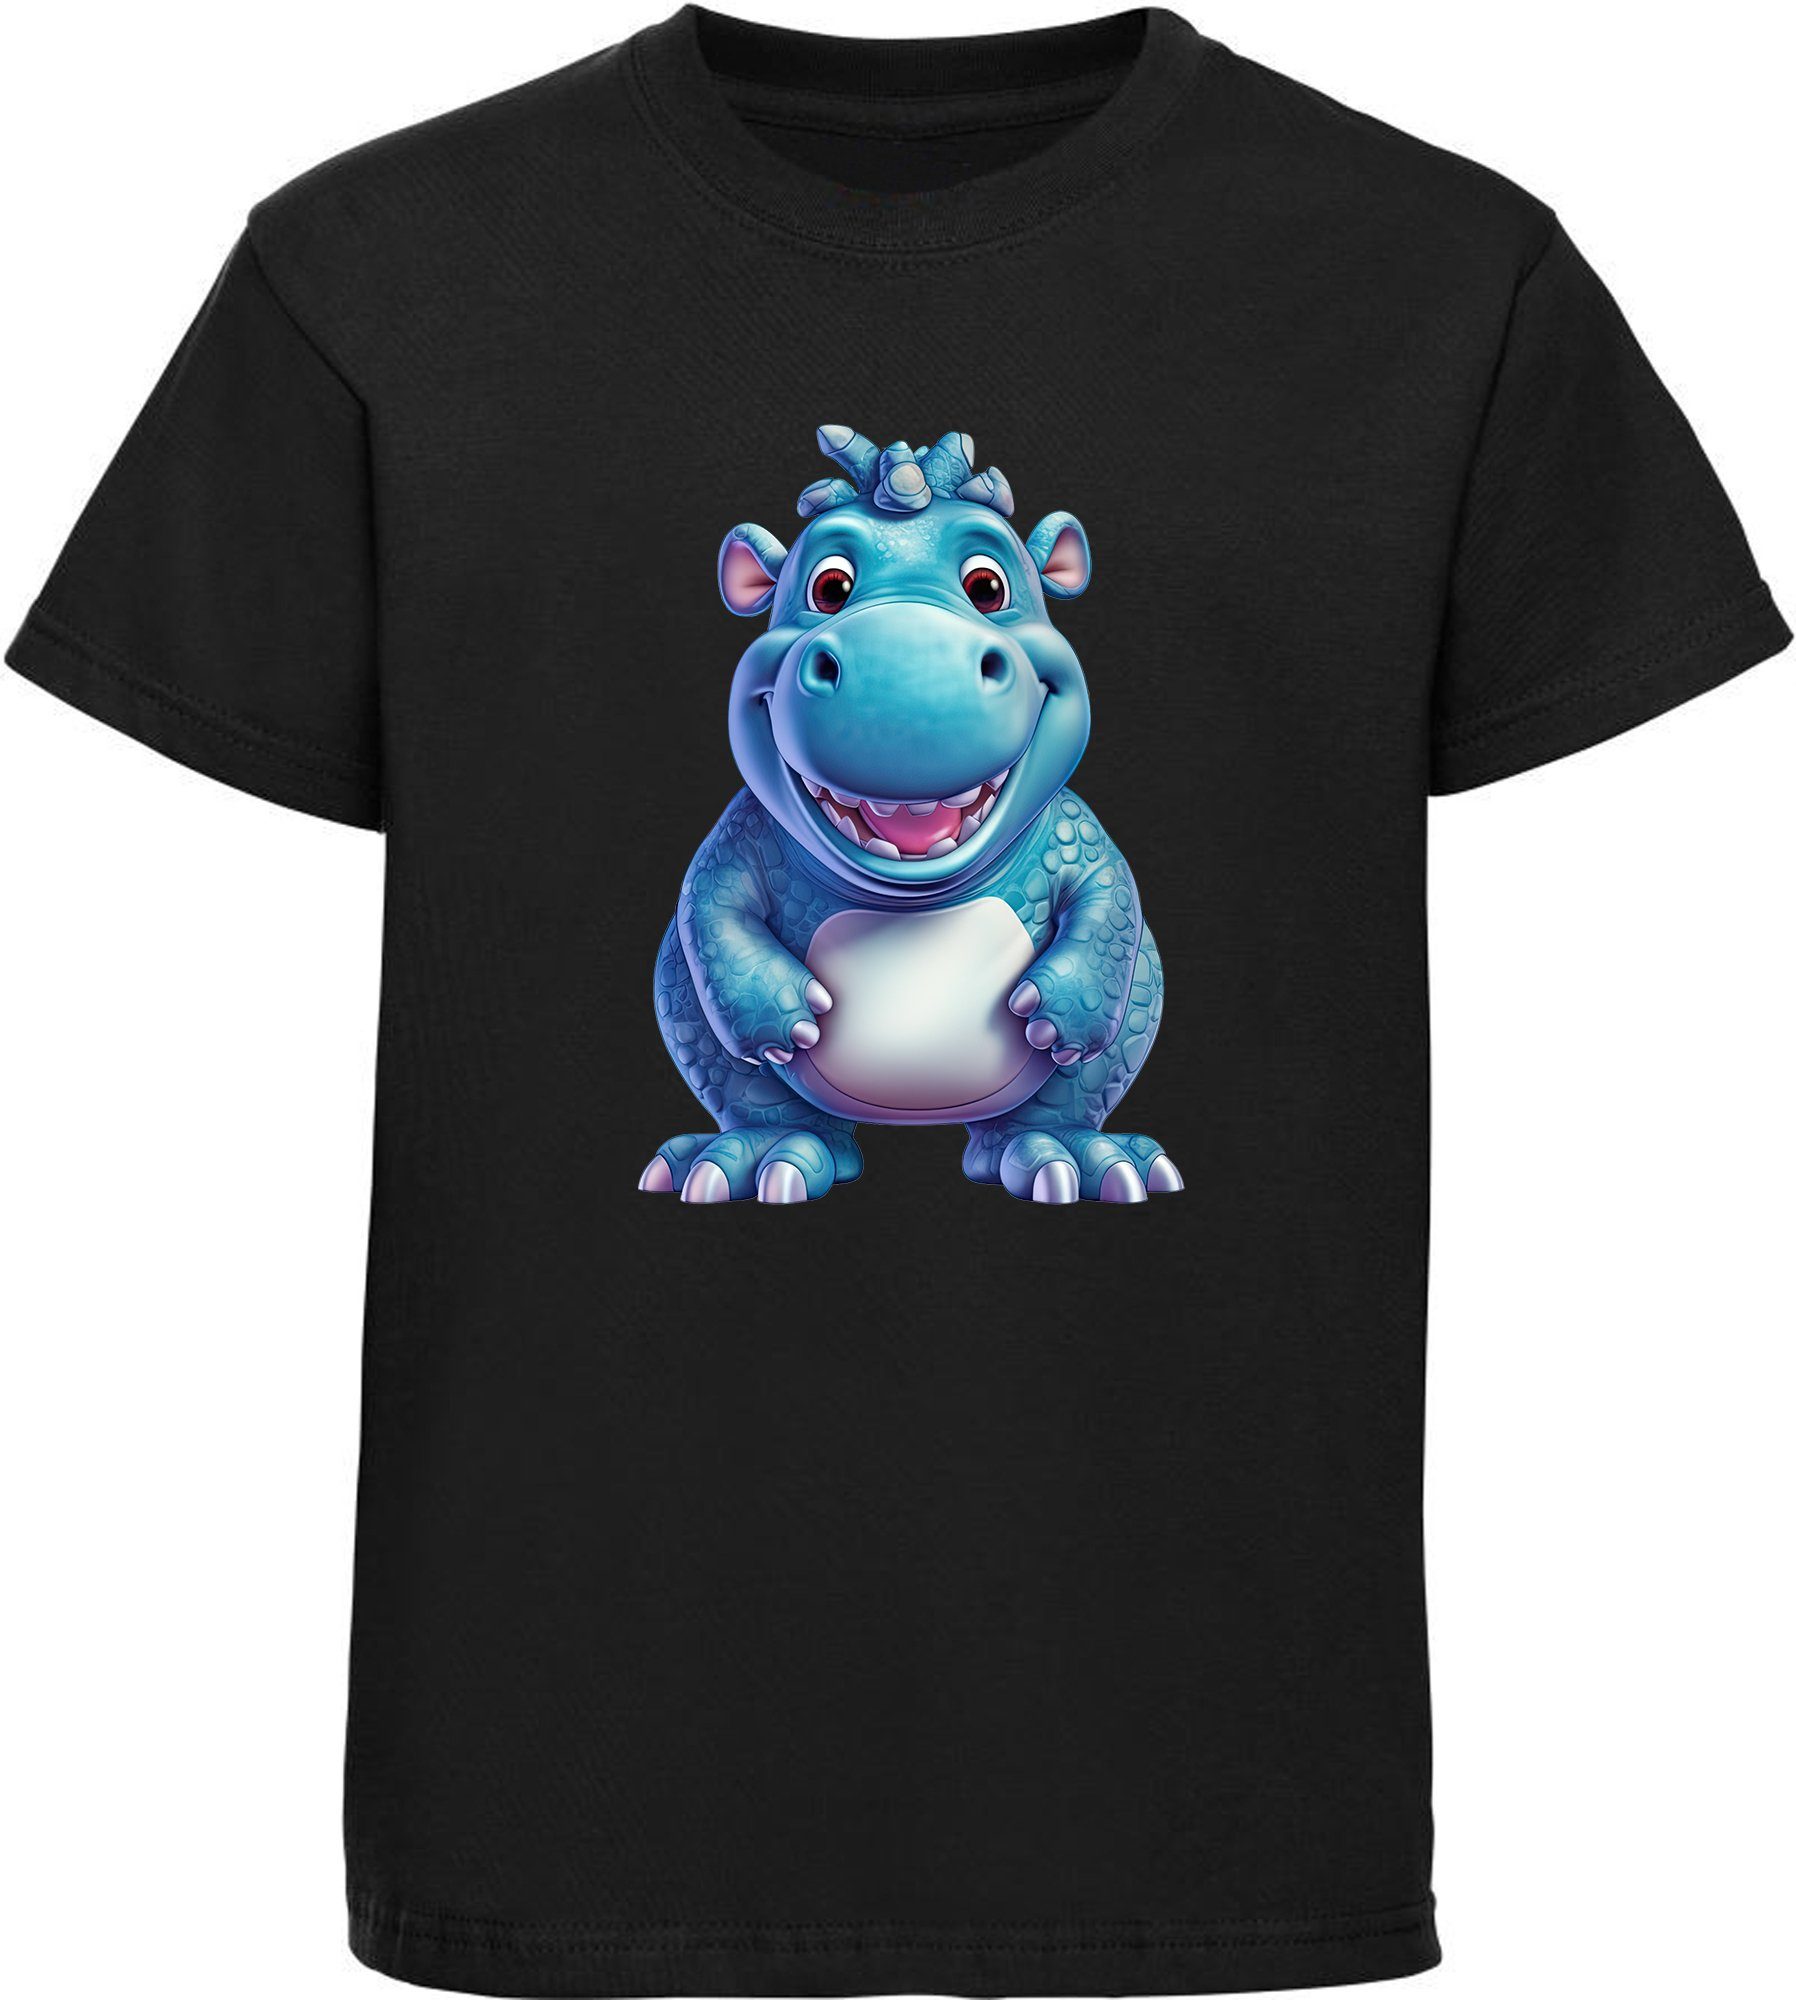 MyDesign24 T-Shirt Kinder Baumwollshirt Hippo bedruckt Print i274 Aufdruck, Shirt Wildtier Nilpferd - mit Baby schwarz